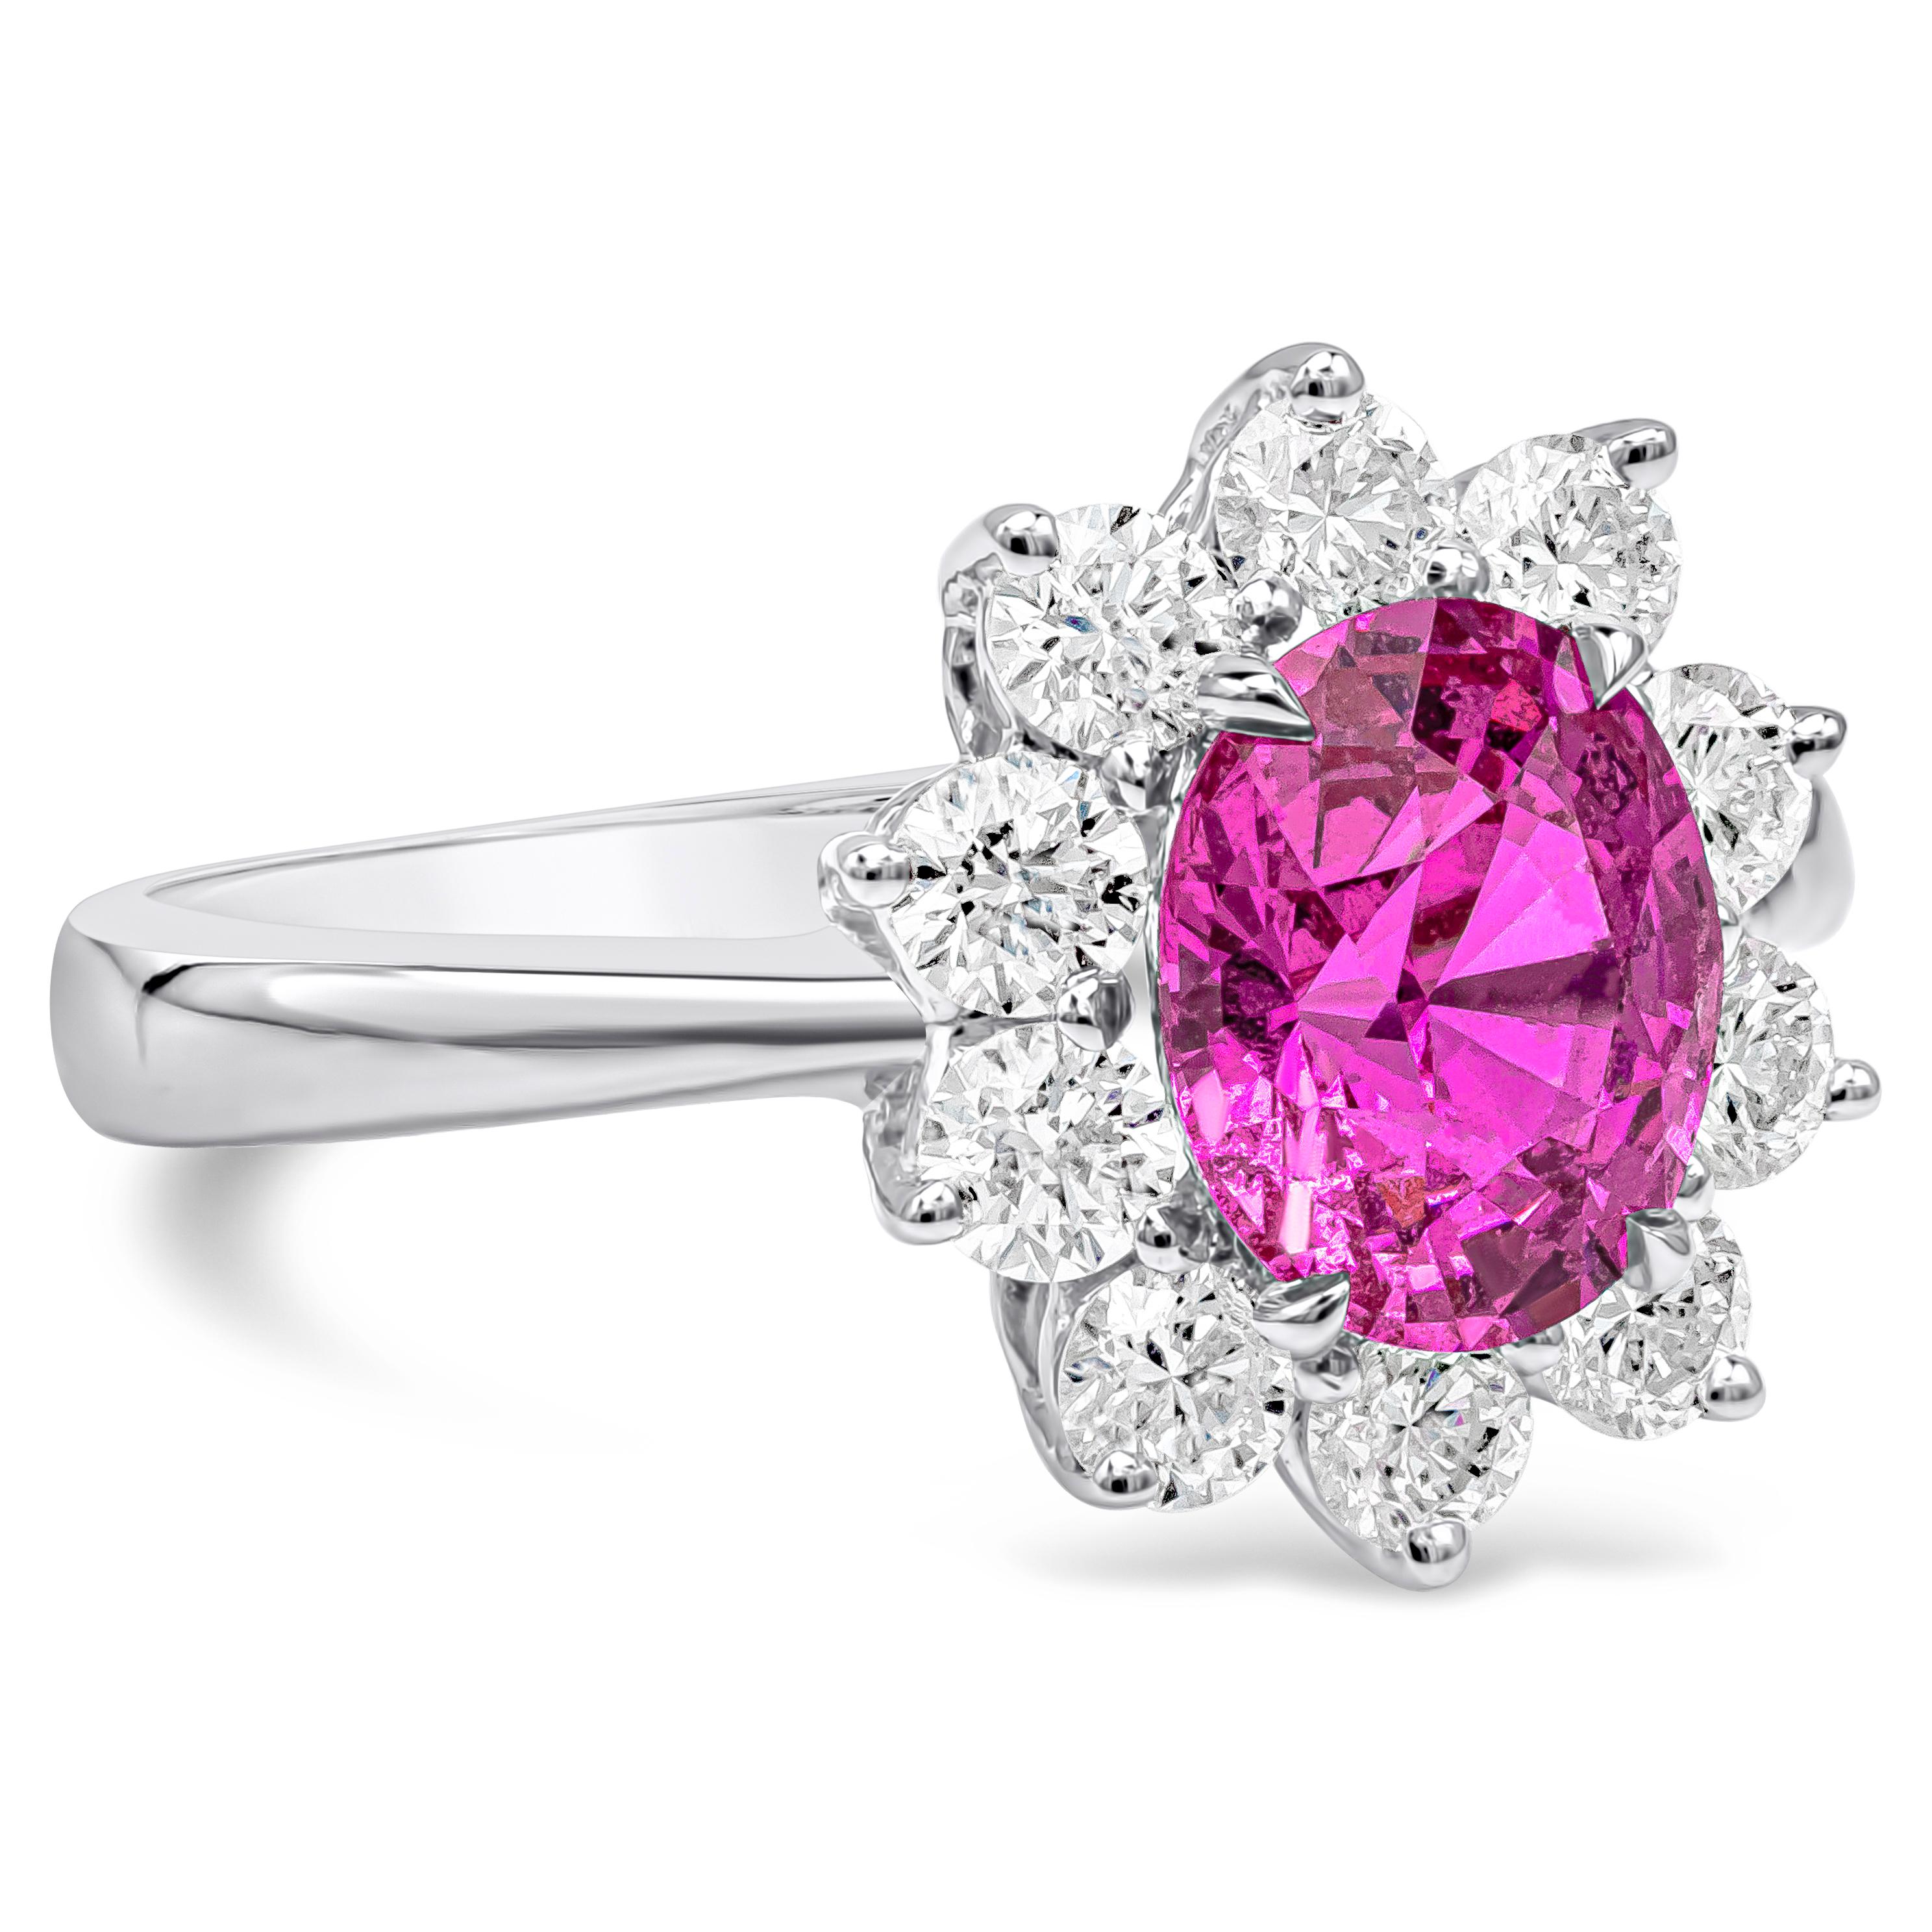 Cette bague de fiançailles en pierres précieuses met en valeur un saphir rose de taille ovale pesant au total 1,89 carat, élégamment entouré d'une rangée de diamants ronds de taille brillante dans un halo de fleurs. Les diamants pèsent 0,82 carat.